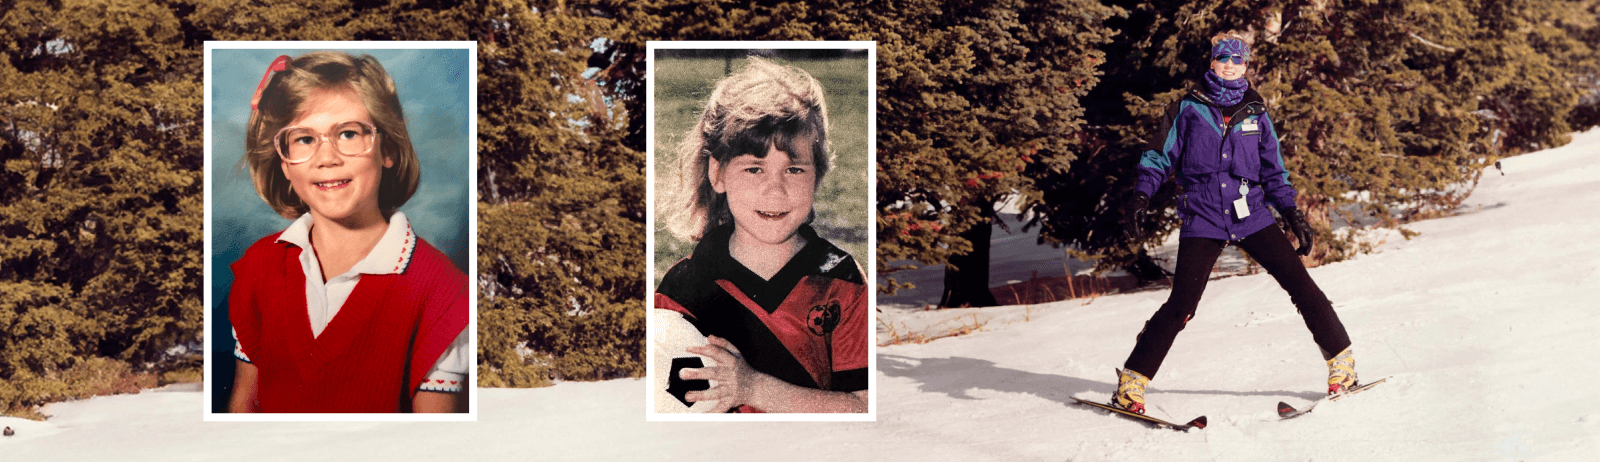 photos of Nicole Forsgren as a child